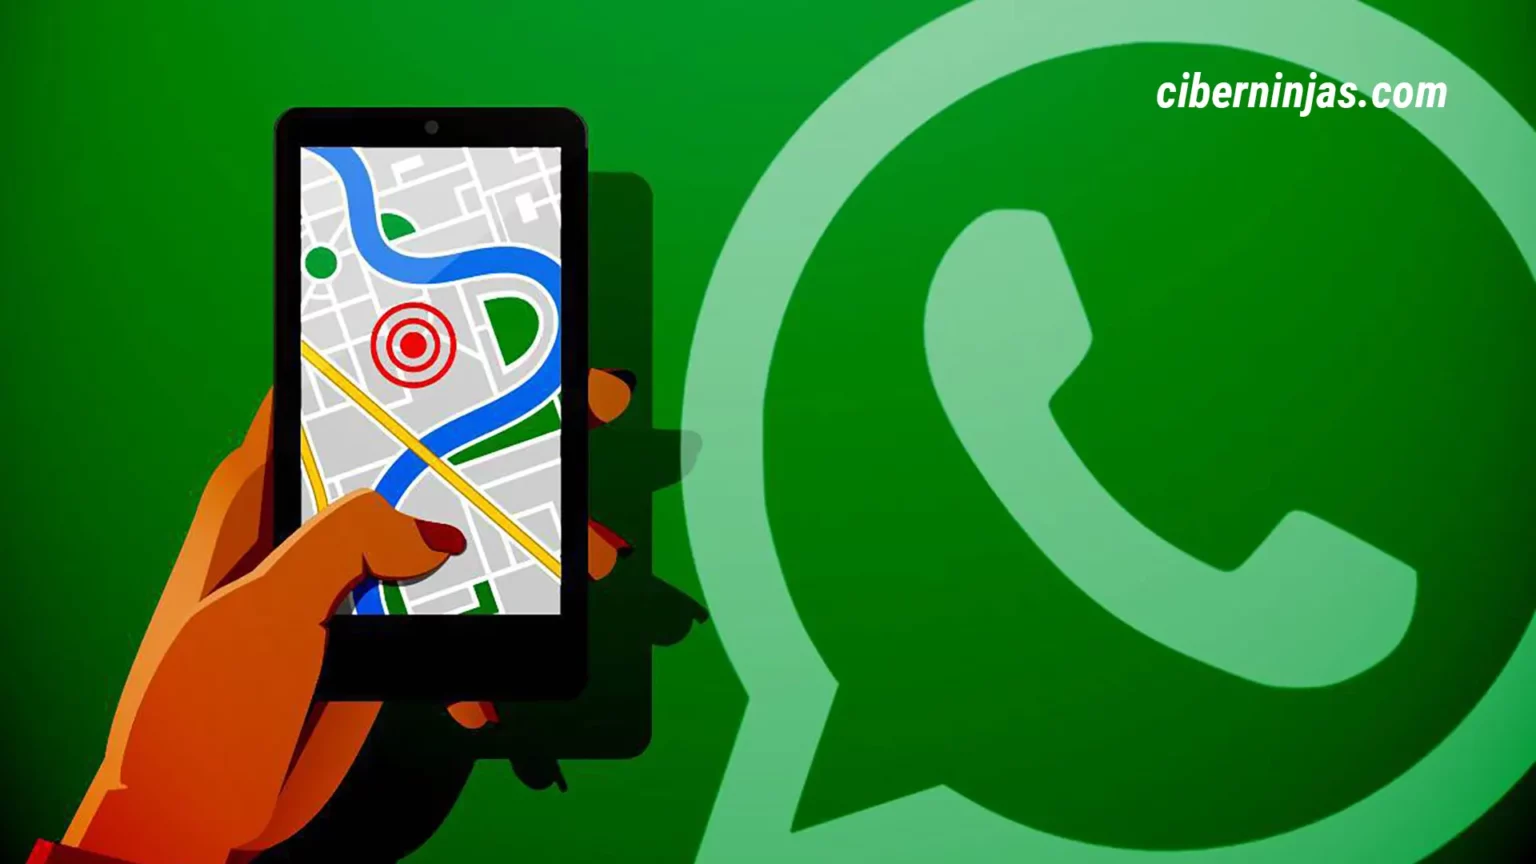 ¿Cómo enviar una ubicación falsa en WhatsApp?